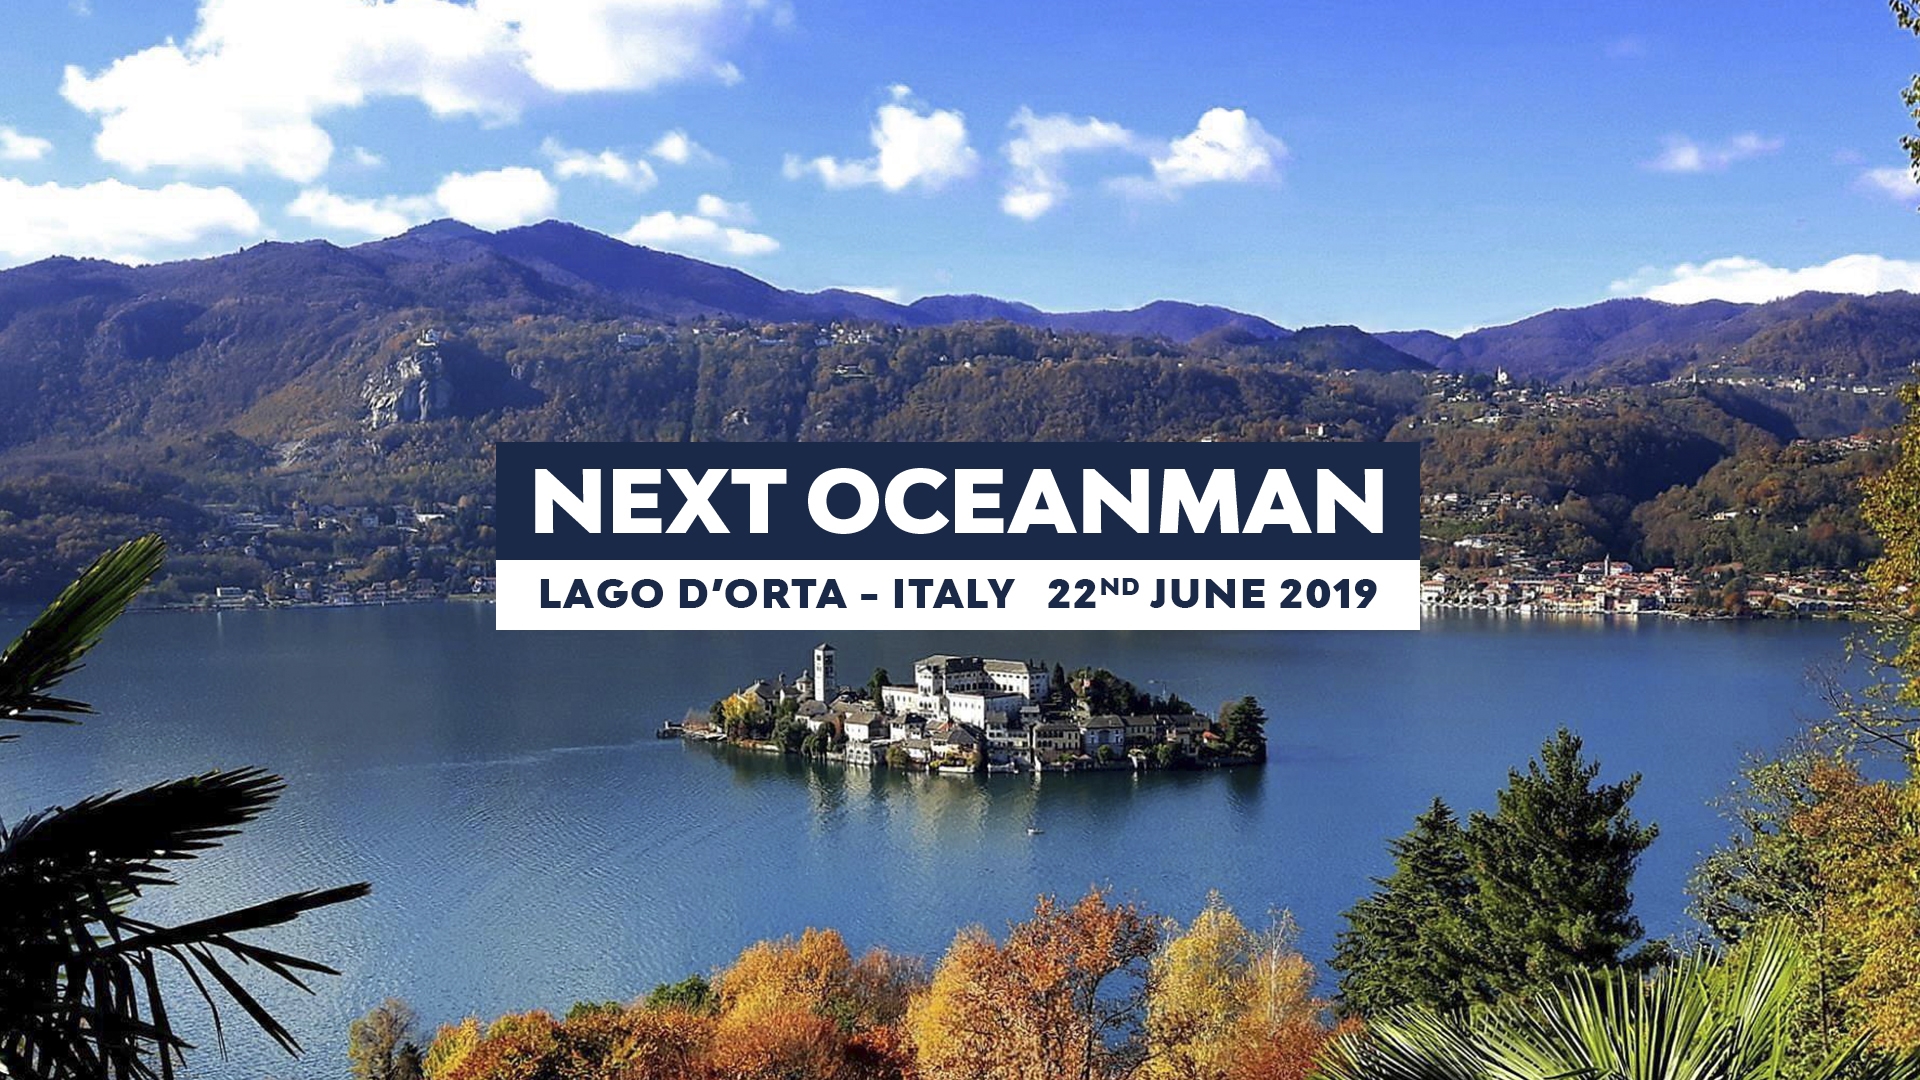 OCEANMAN ORTA LAKE - ITALY 2019